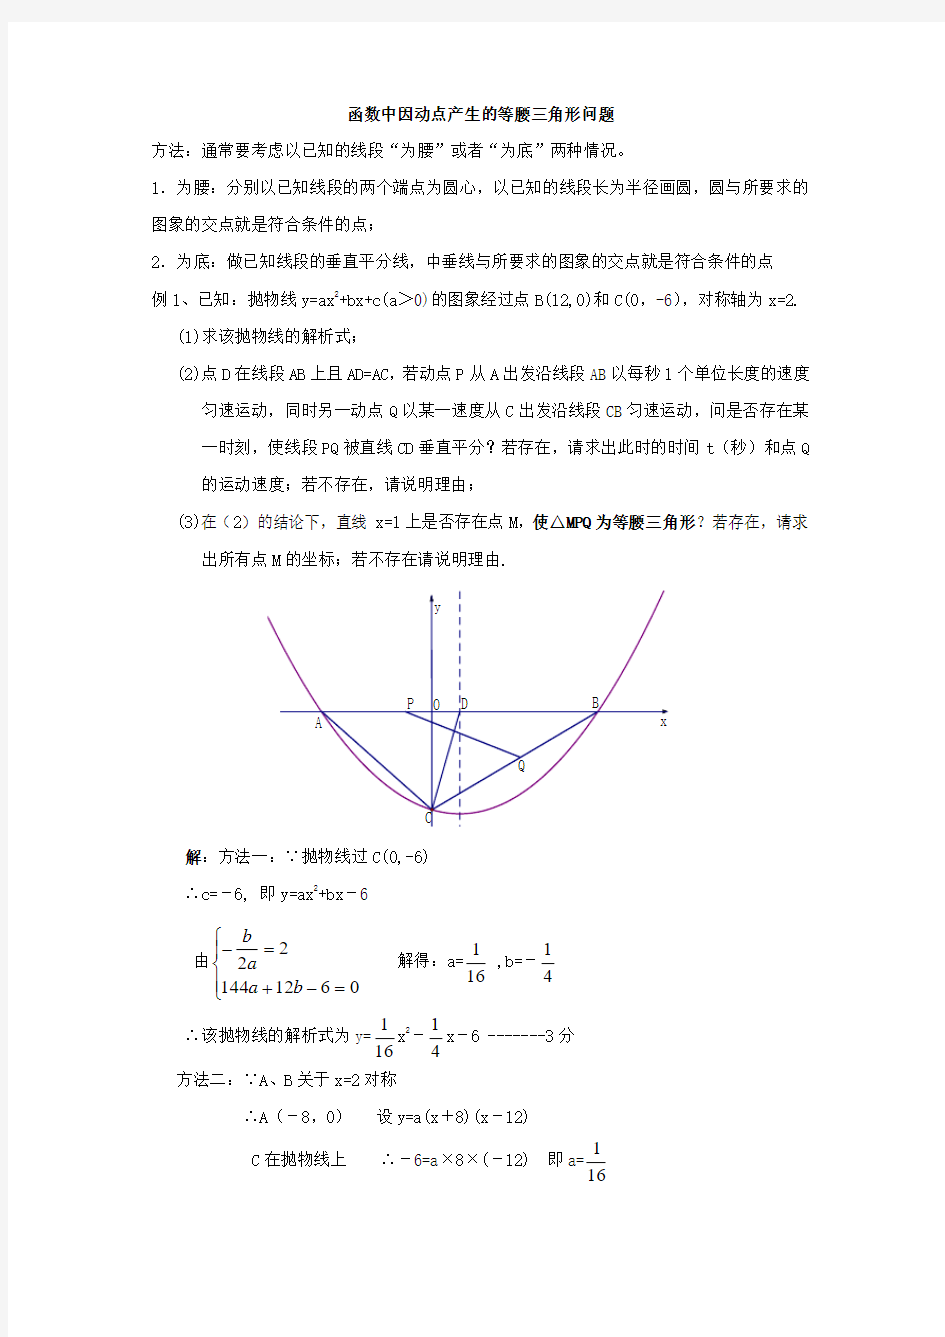 函数中因动点产生的等腰三角形问题